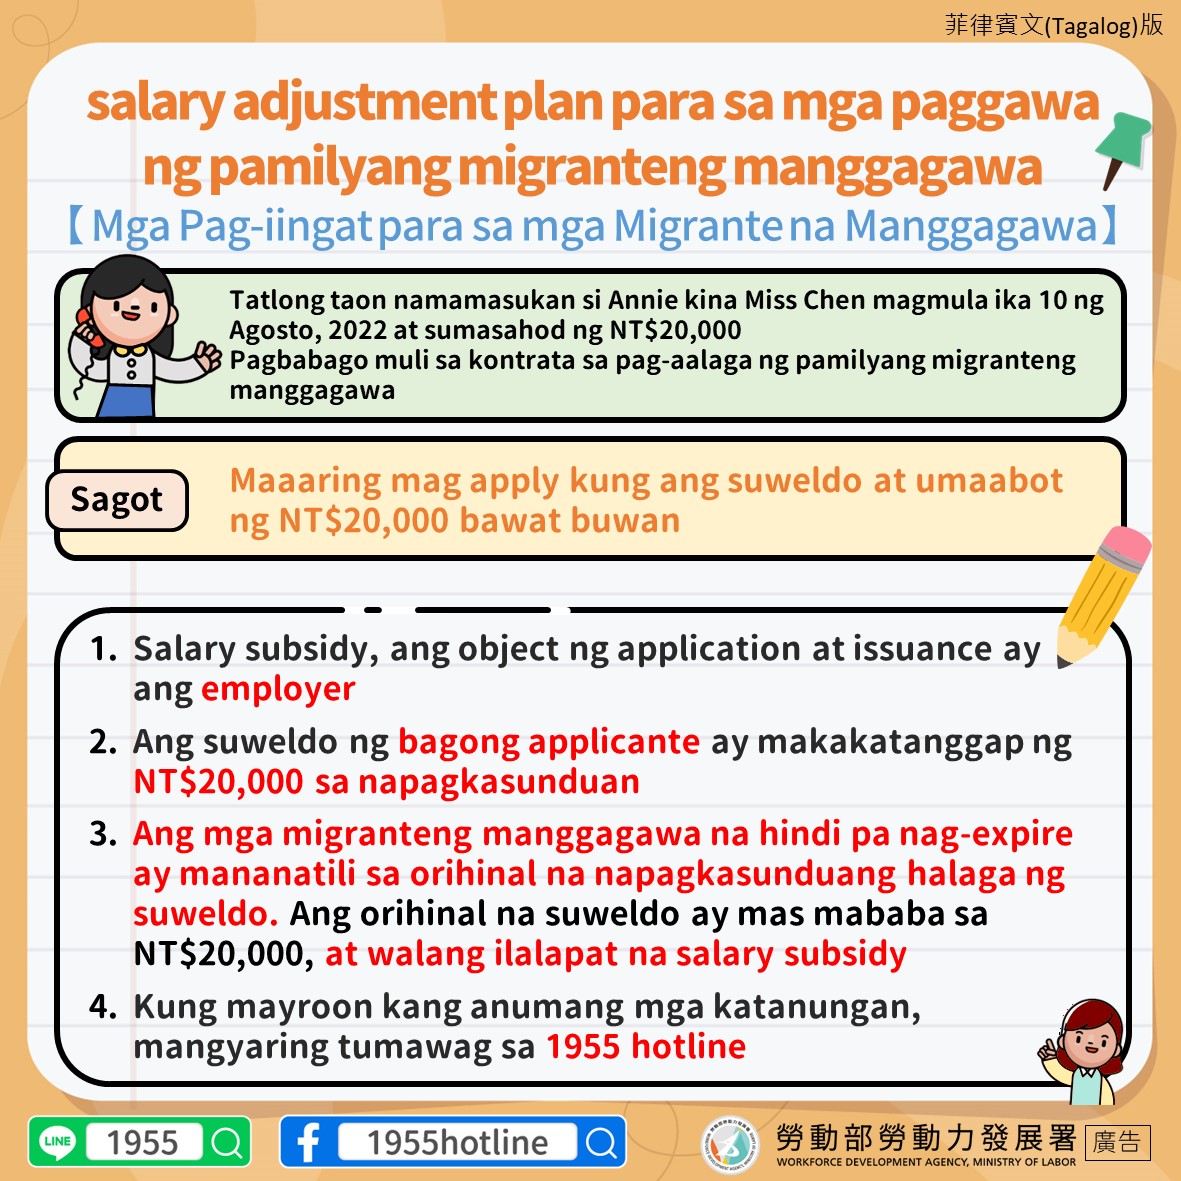 1110824家事移工薪資補助對象為雇主-移工注意事項-菲律賓文.jpg